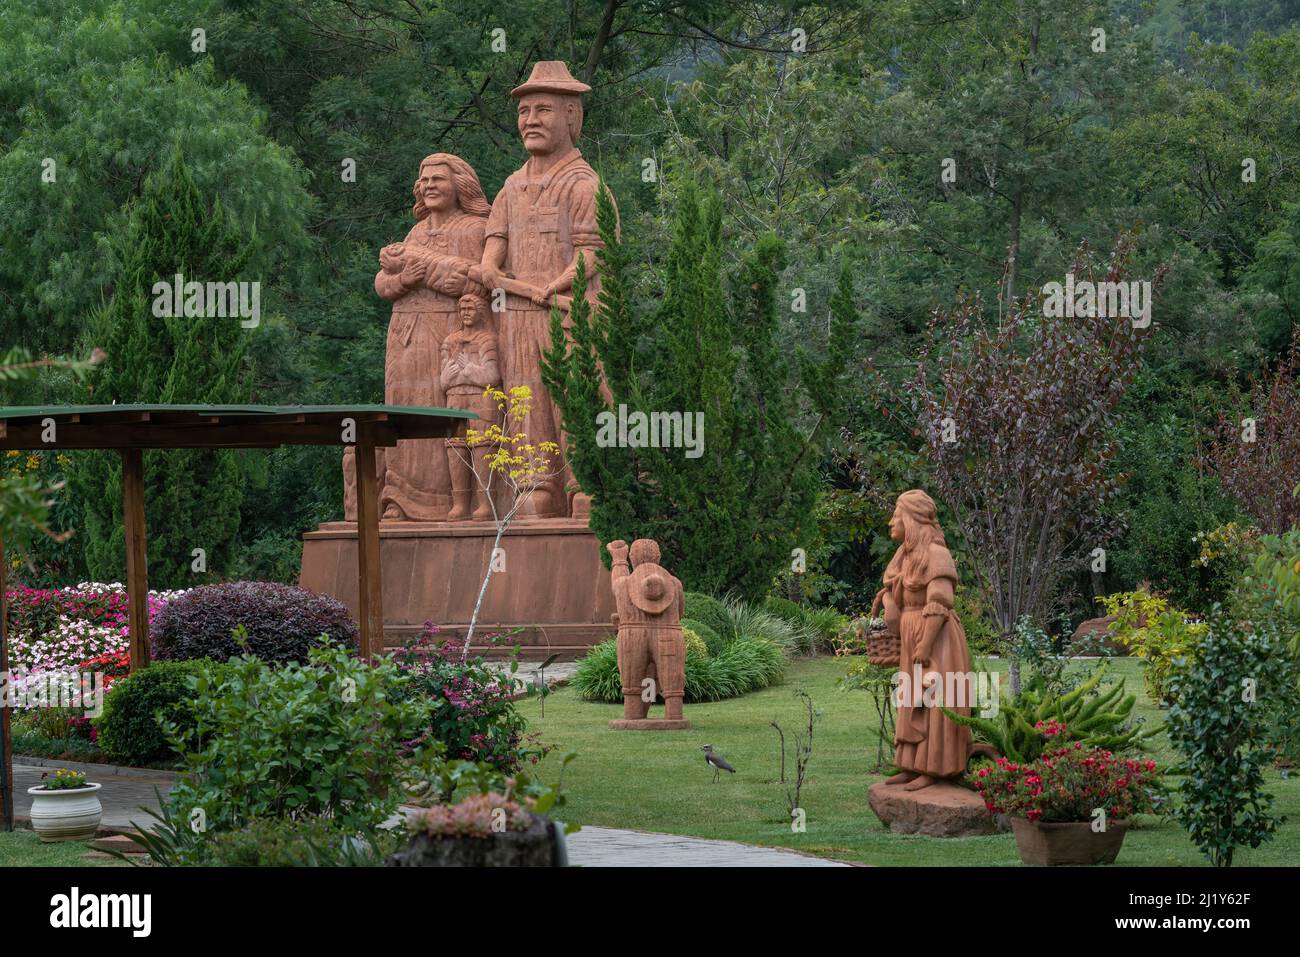 Esculturas Parque Pedras do Silencio sculpture park - Nova Petropolis, Rio Grande do Sul, Brazil Stock Photo